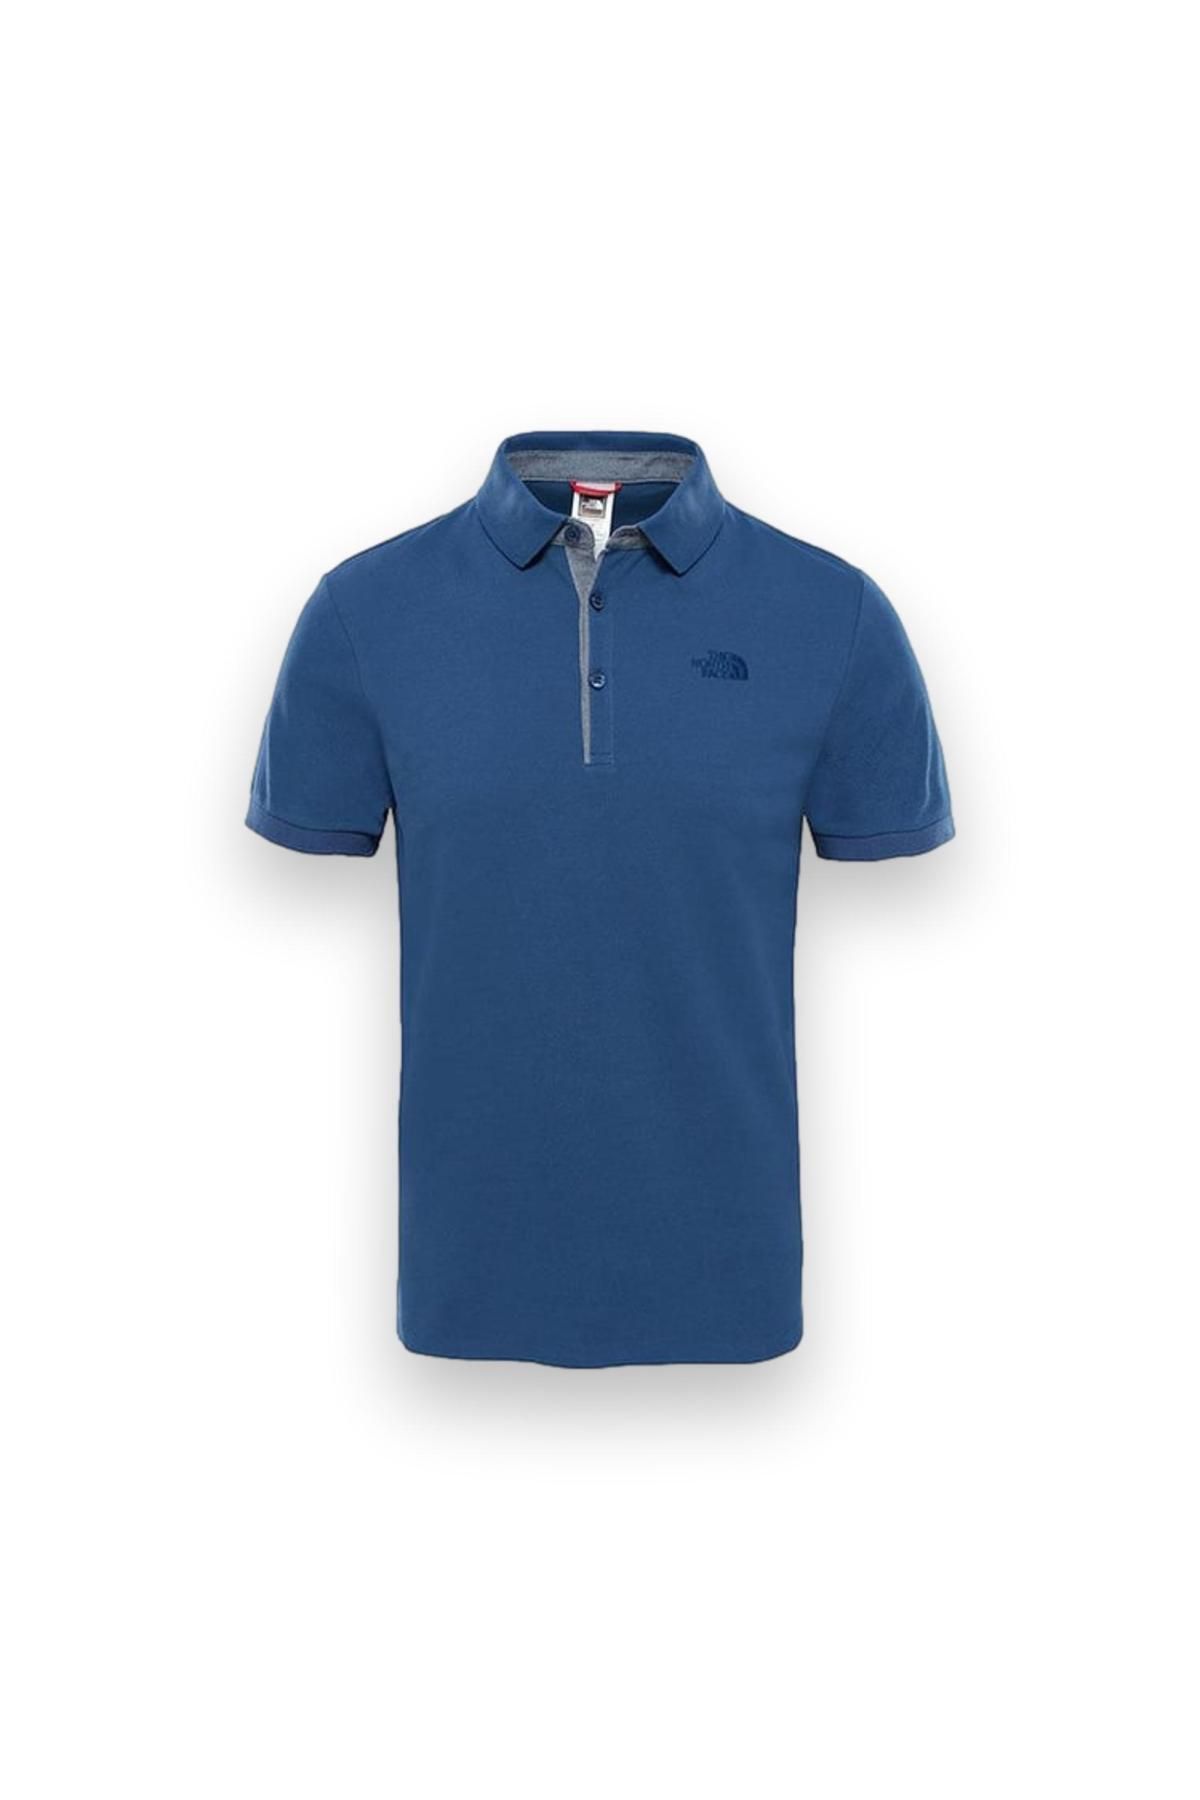 The North Face Nf00Cev4 M Premium Polo Piquet-Eu Mavi Erkek T-Shirt